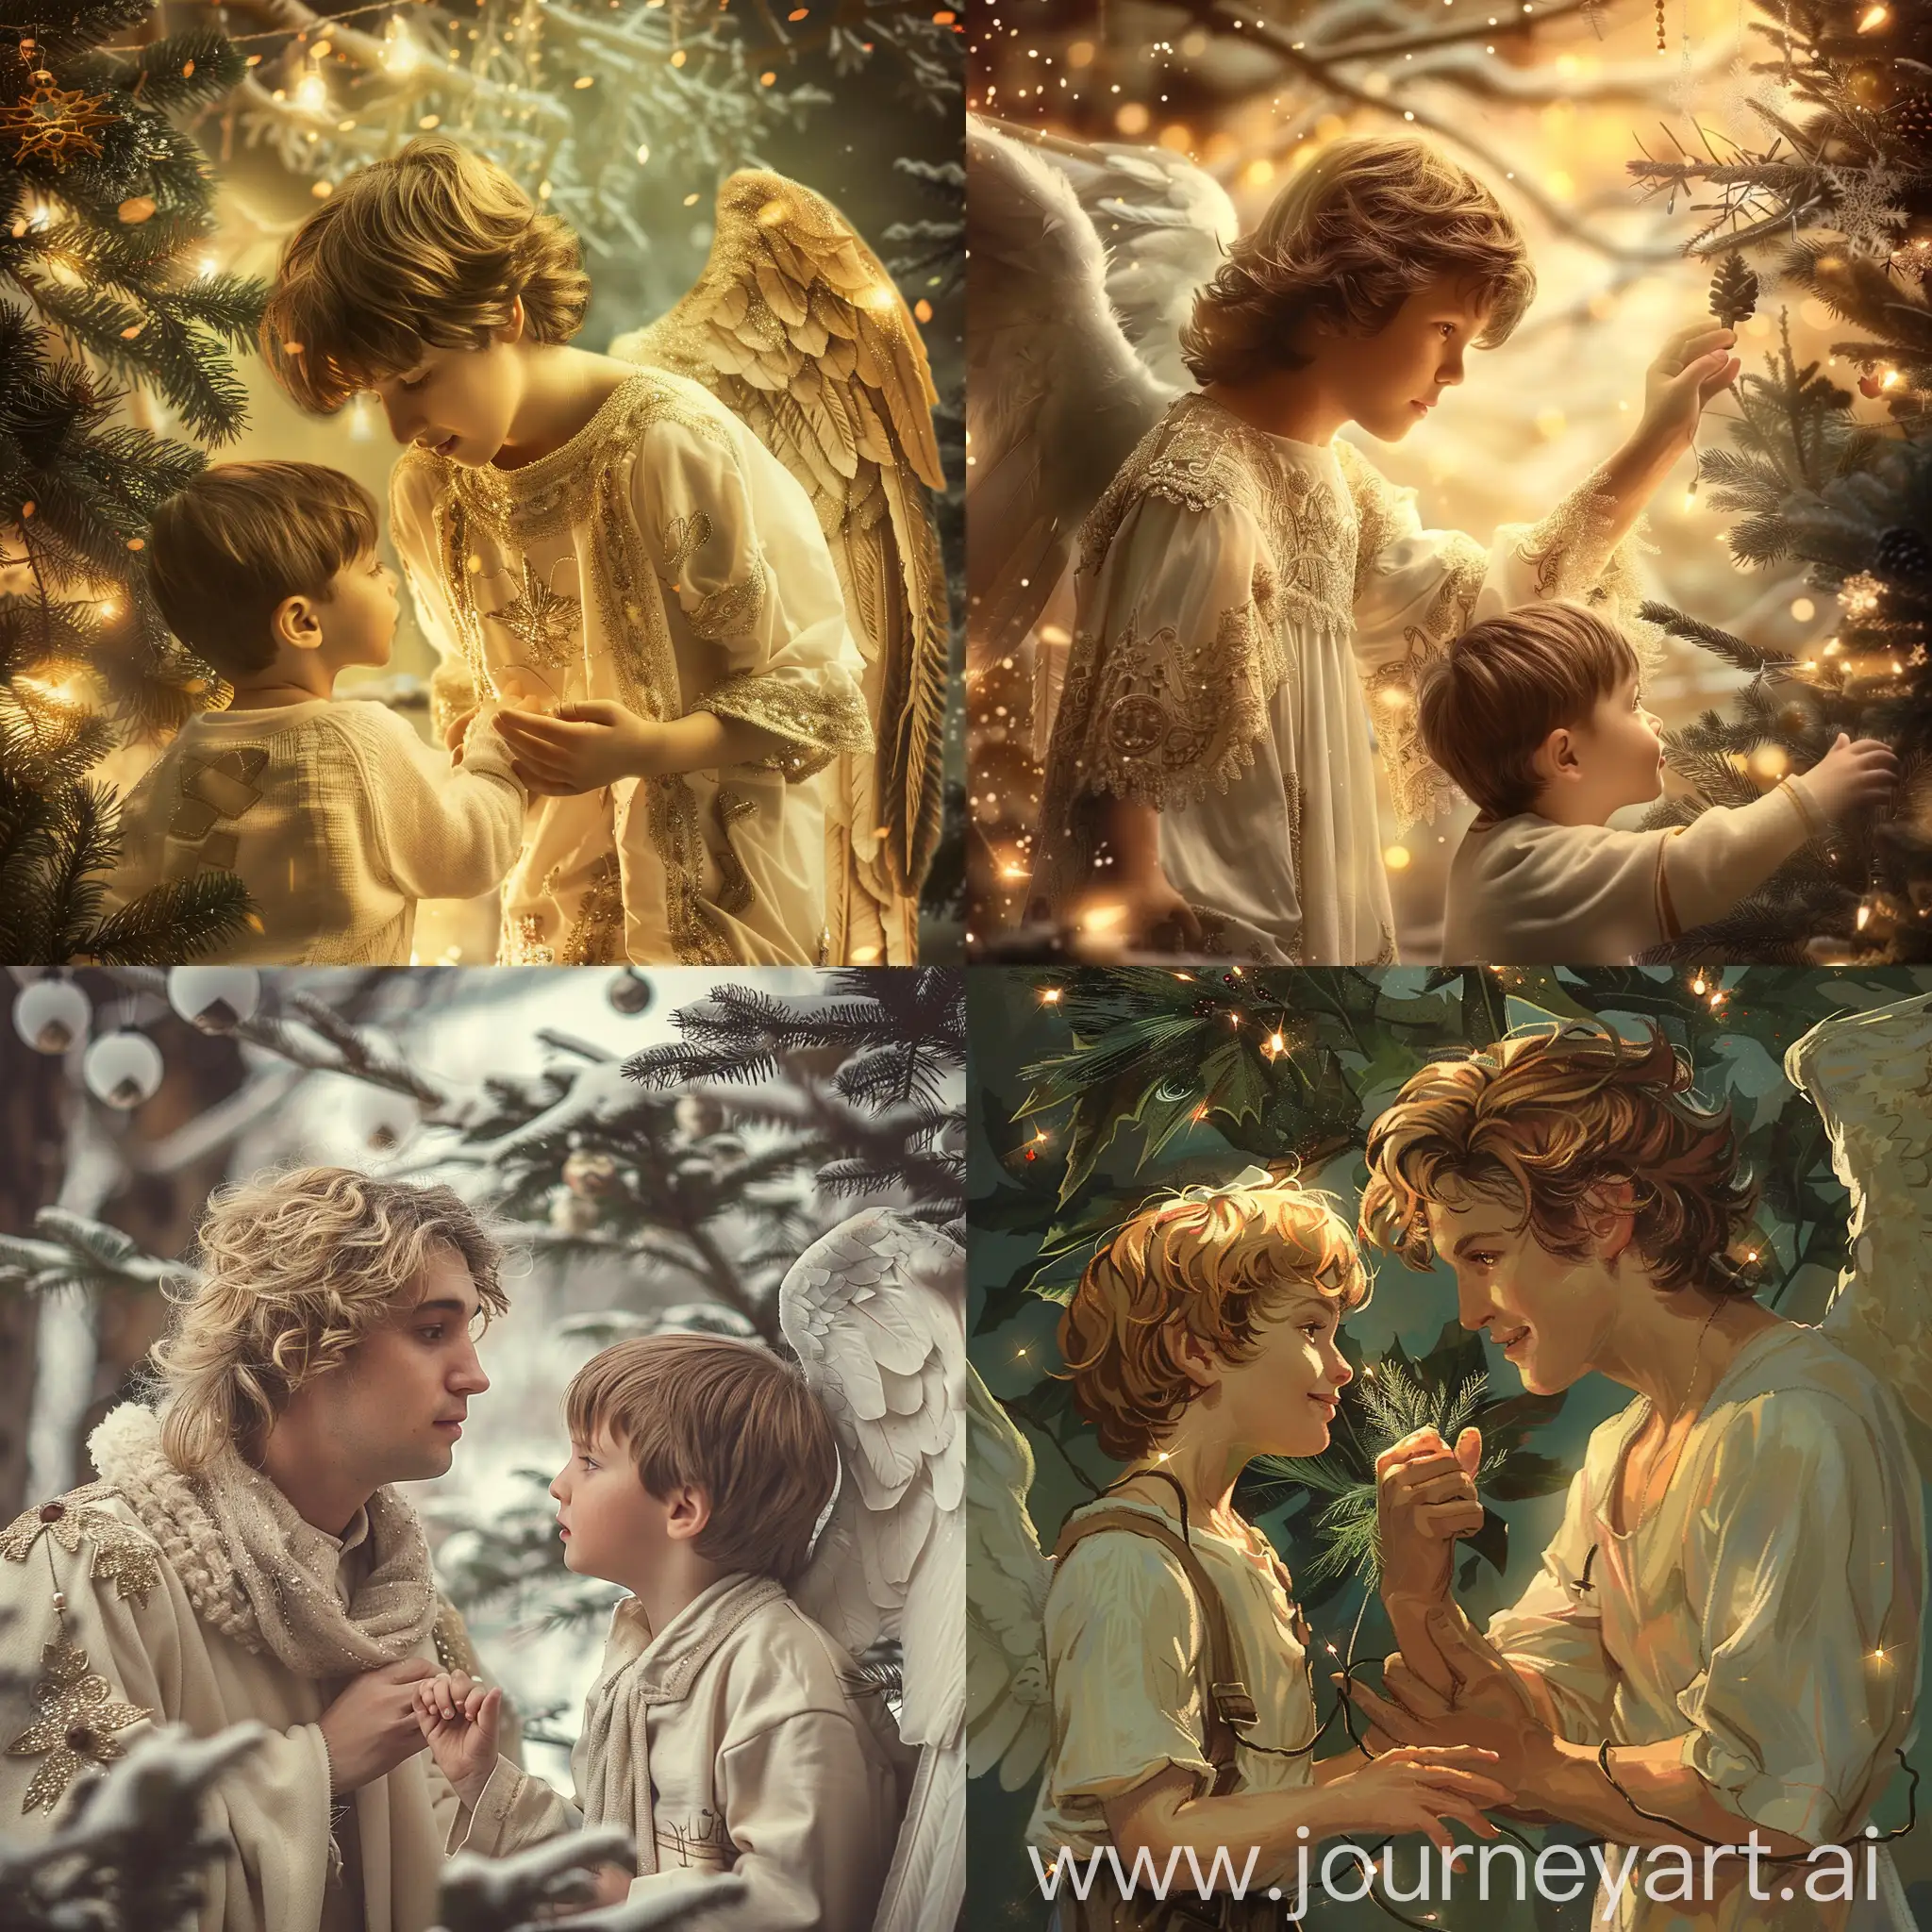 красивый ангел взрослый мужского пола и маленький мальчик сосхищенно смотрит на него, новогодняя елка